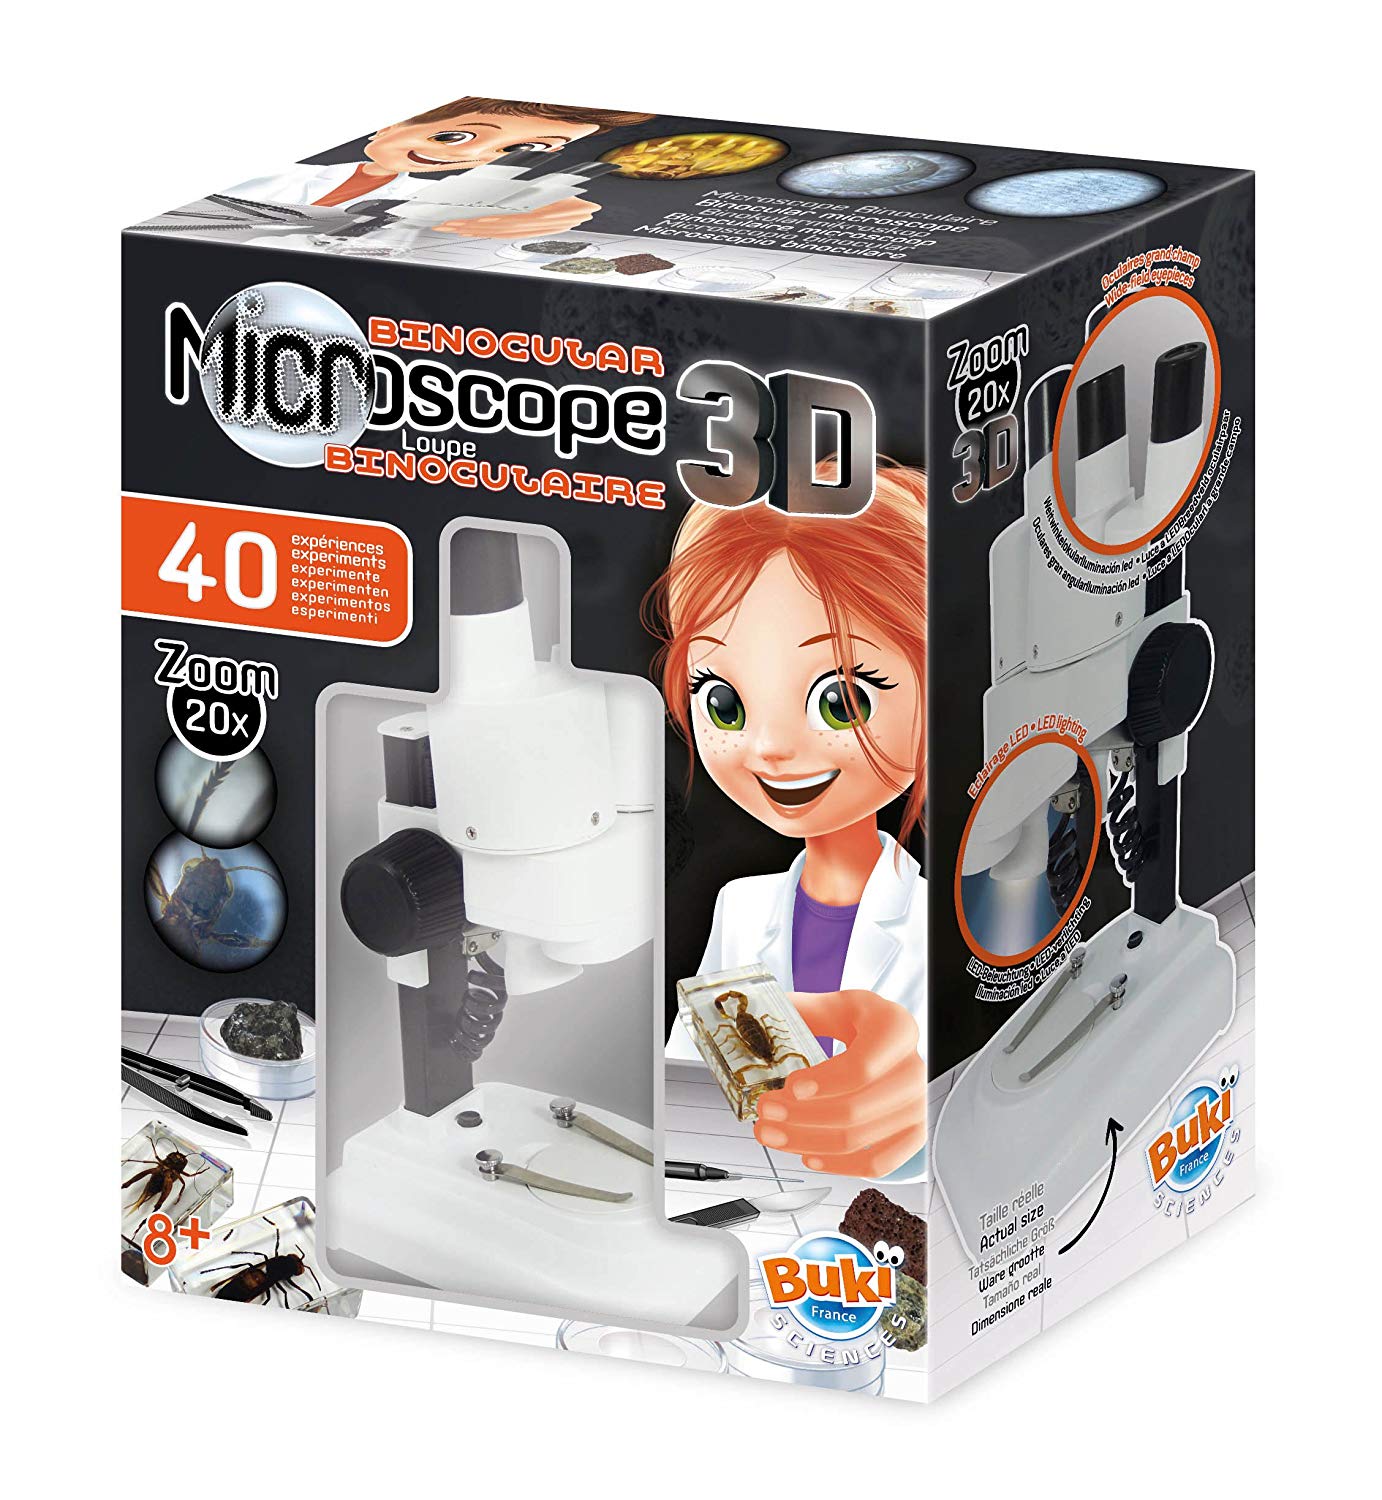 Microscope Stereo 3D - Loupe binoculaire - Buki France MR500 - Jeu éducatif  scientifique pour enfant